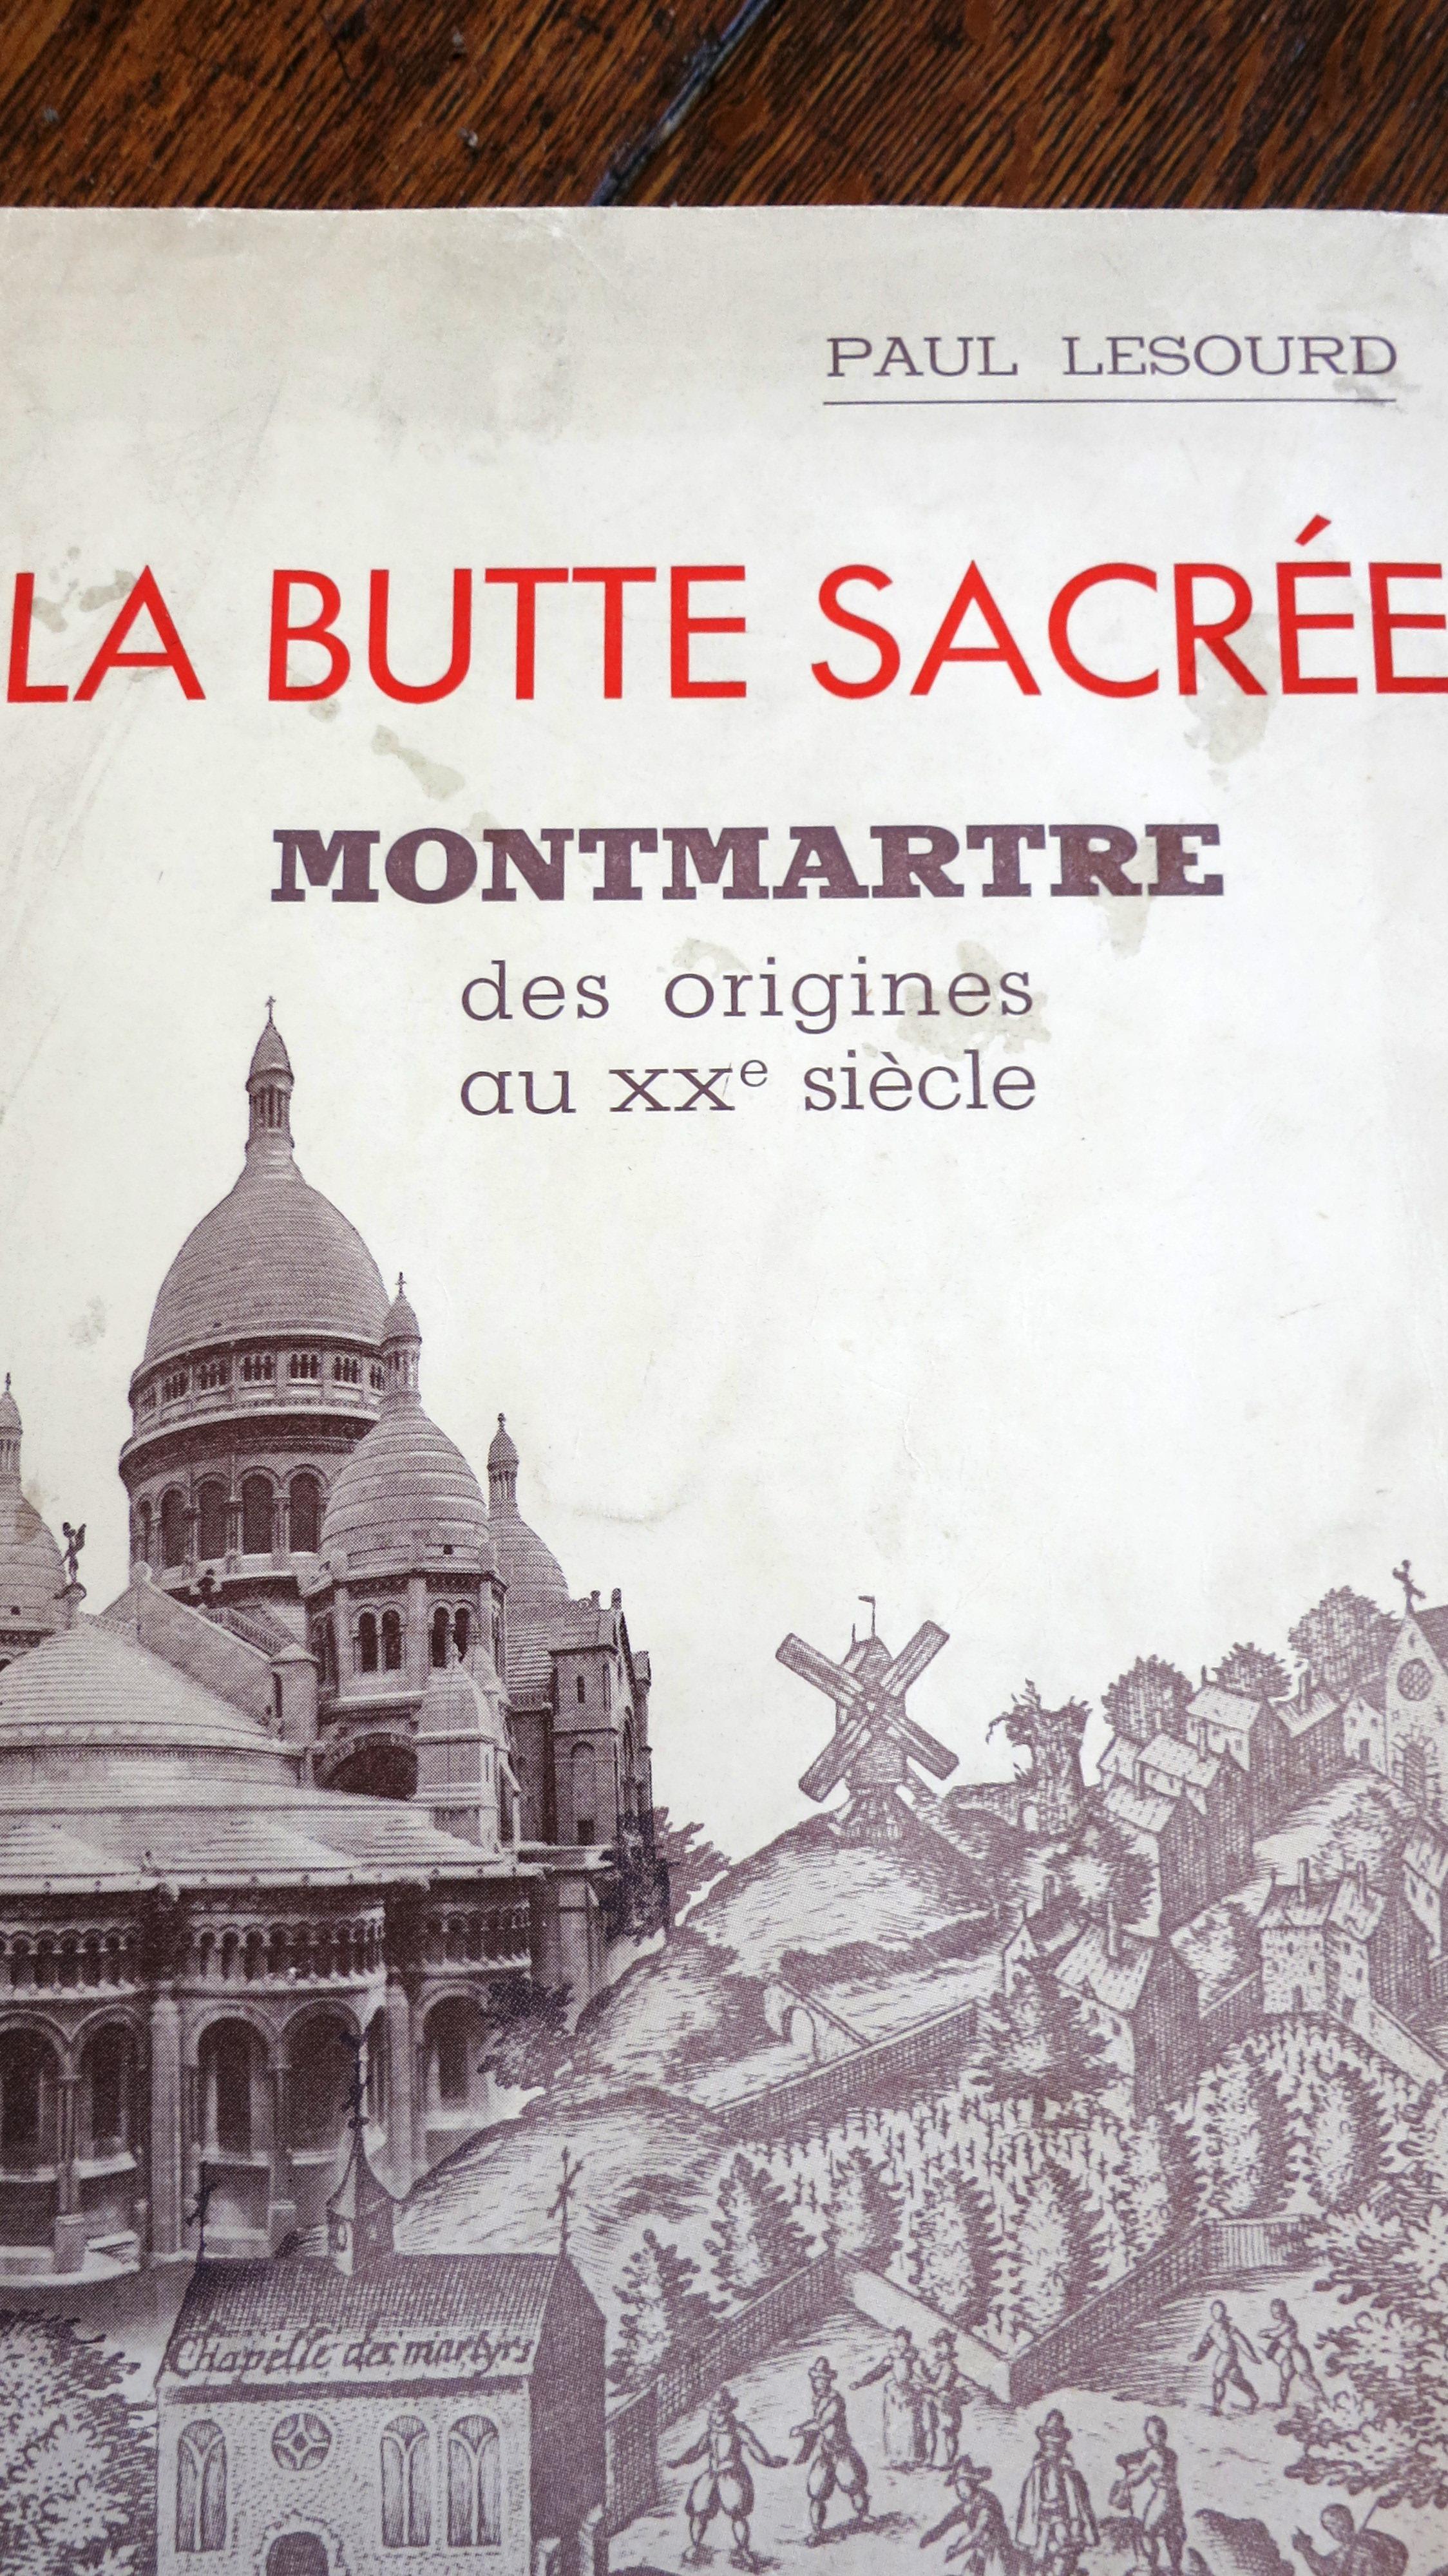 La Butte sacrée Montmartre des origines au XXe siècle